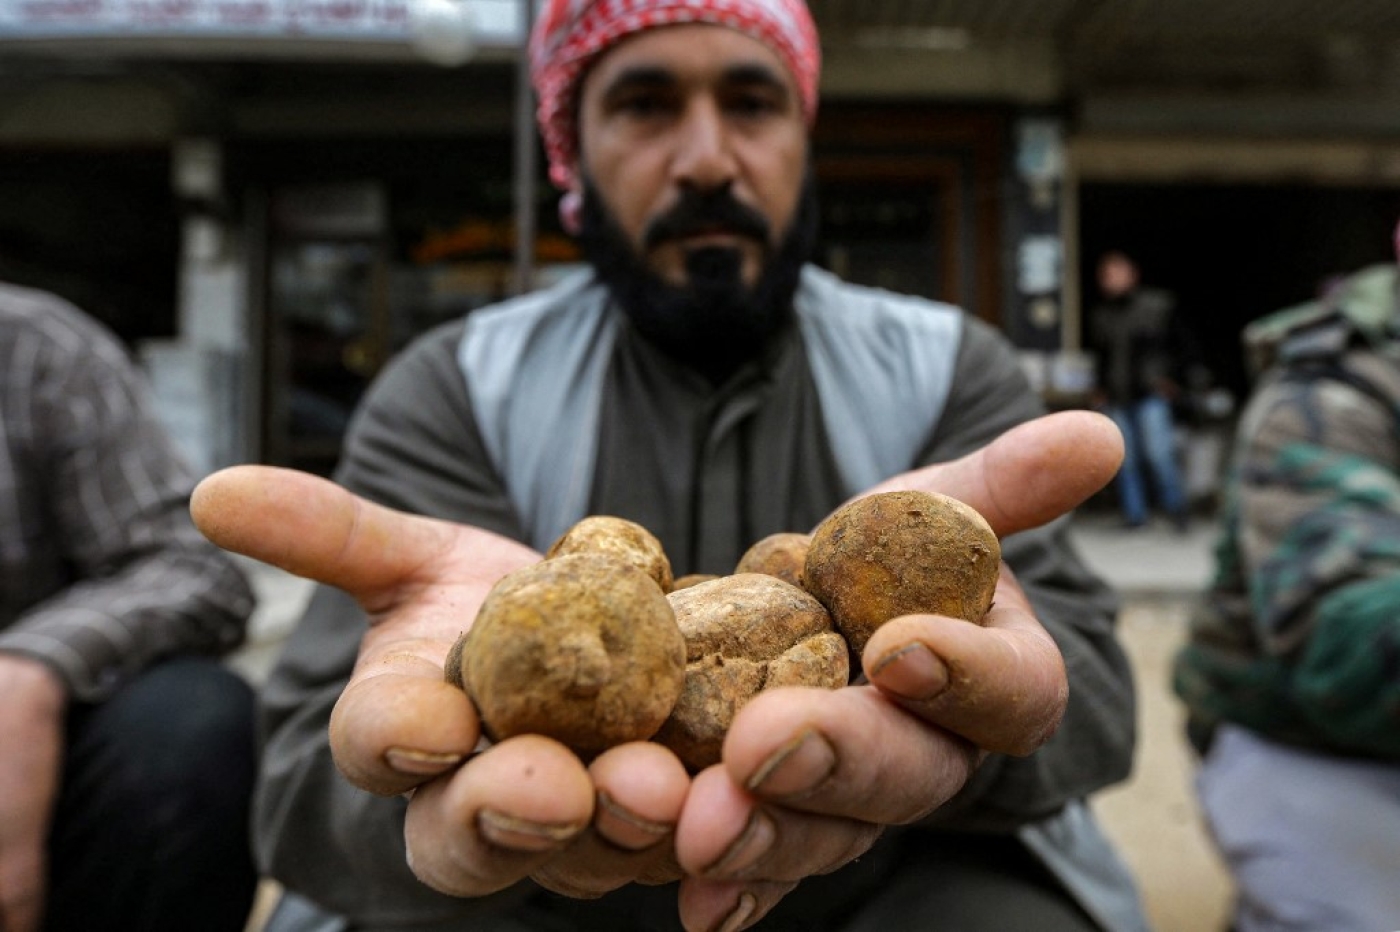 Le kilo de truffes se vend entre cinq et 25 dollars, selon la taille et la qualité, dans un pays où le salaire mensuel moyen est de 18 dollars (AFP/Louai Beshara)